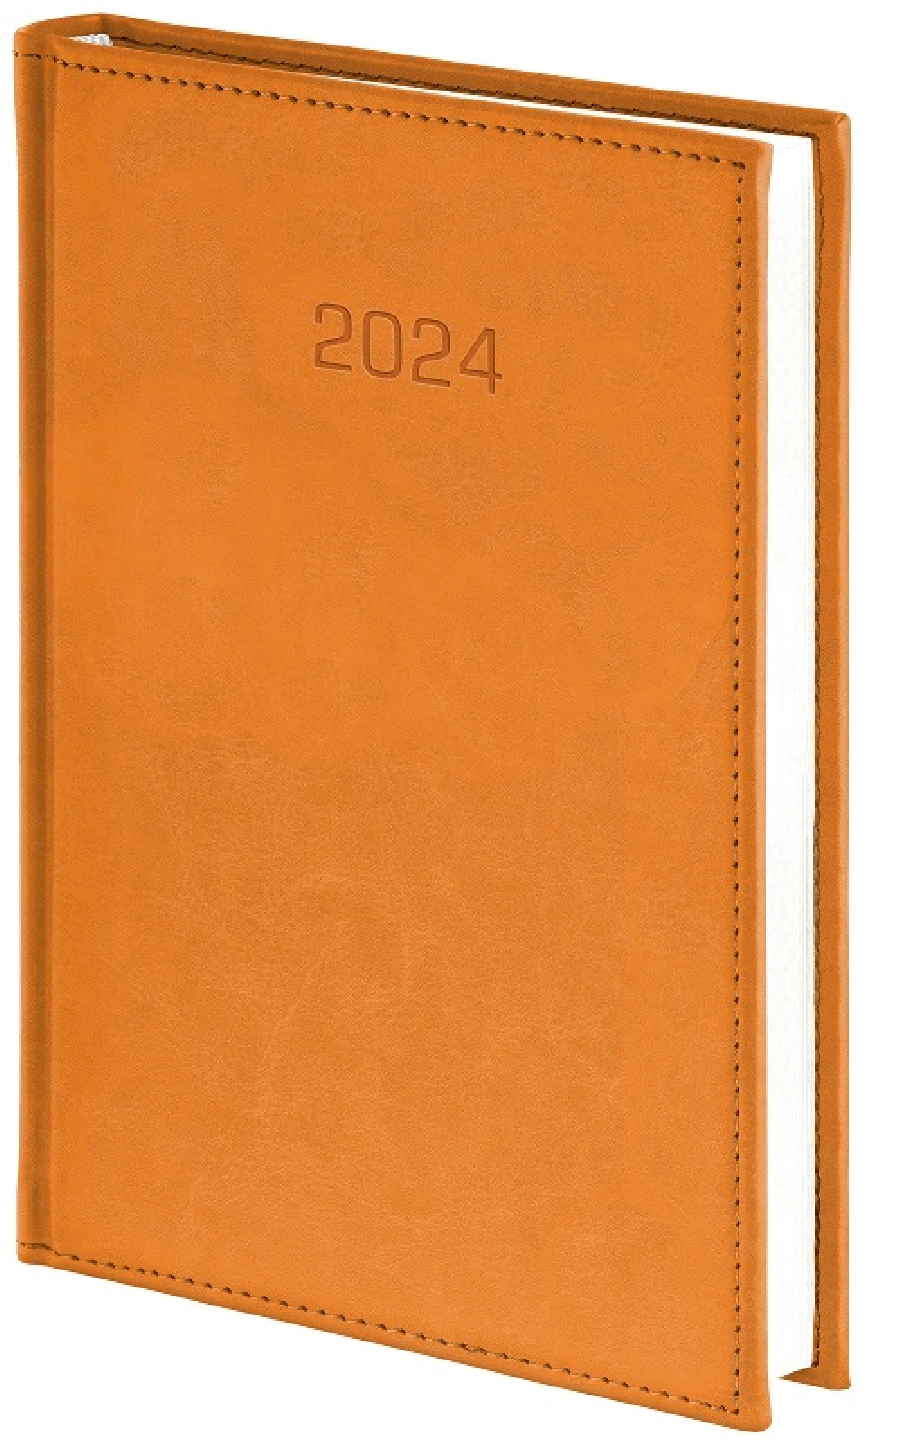 Nebraska kalendarz książkowy 2024 dzienny A4 GR-160079 beżowy